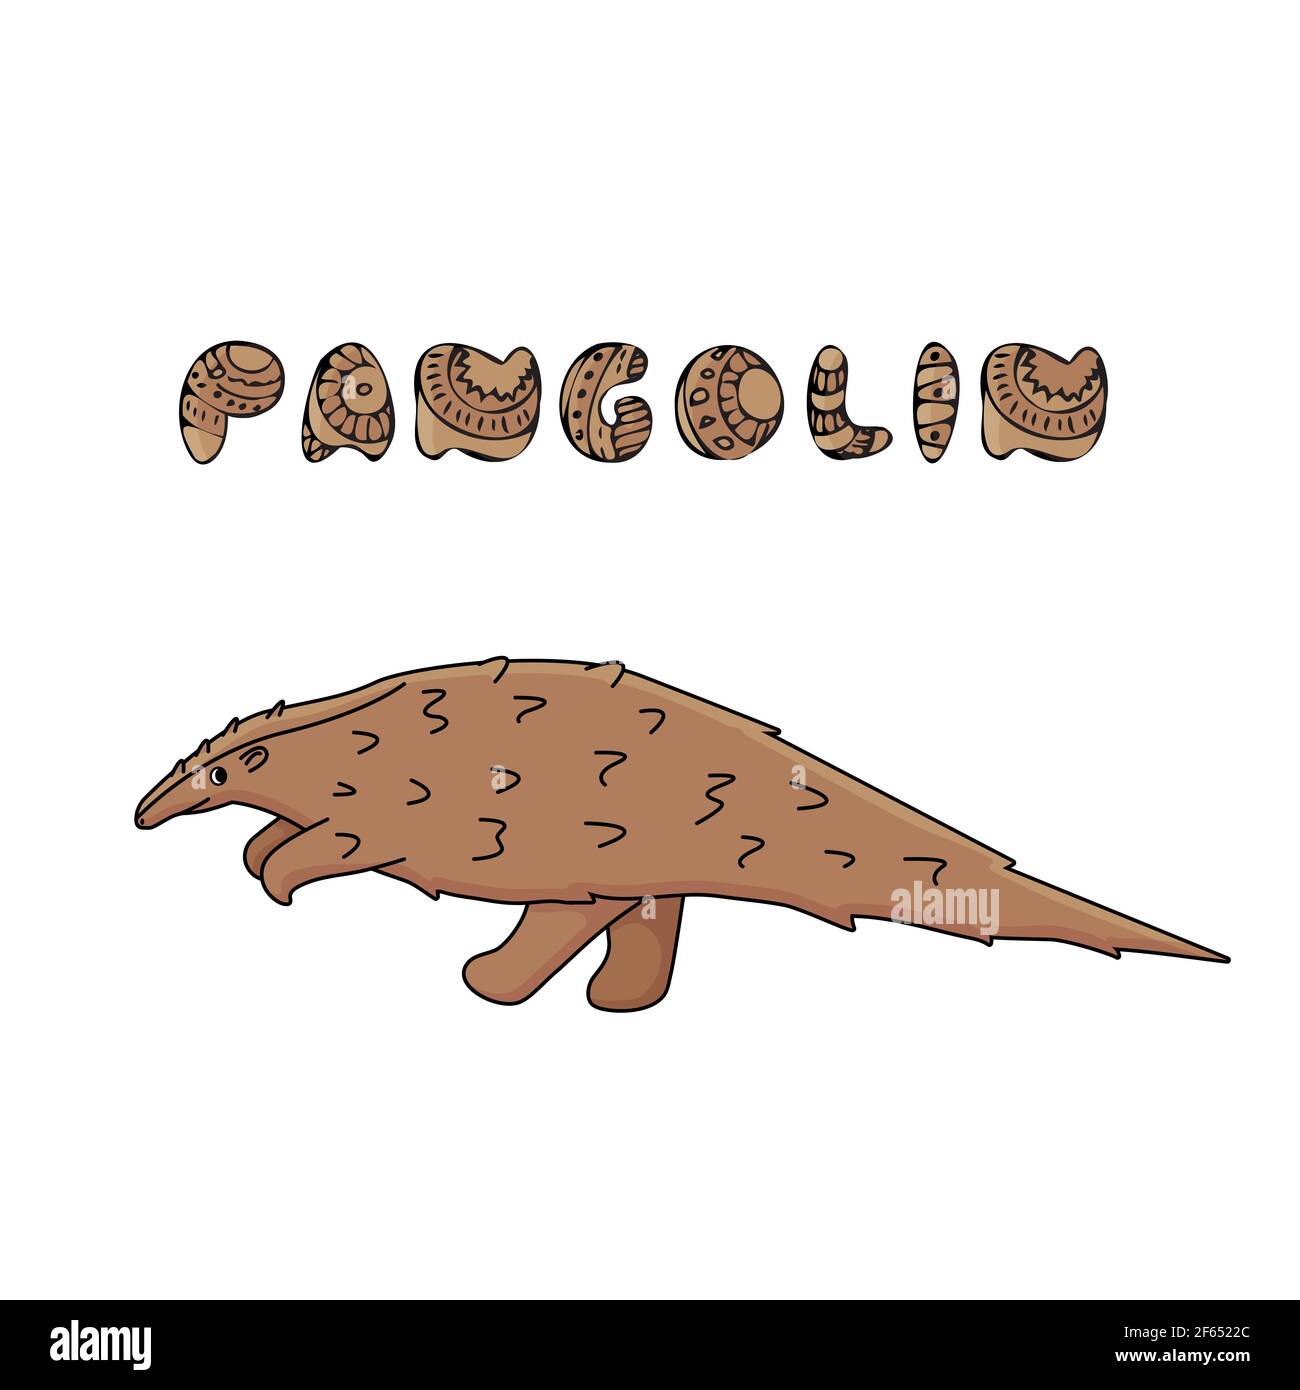 Pangolina marrone o anteater scaly con testo del nome. Vettore contorno doodle cartone animato singolo animale africano o asiatico. Illustrazione isolata su bianco Illustrazione Vettoriale